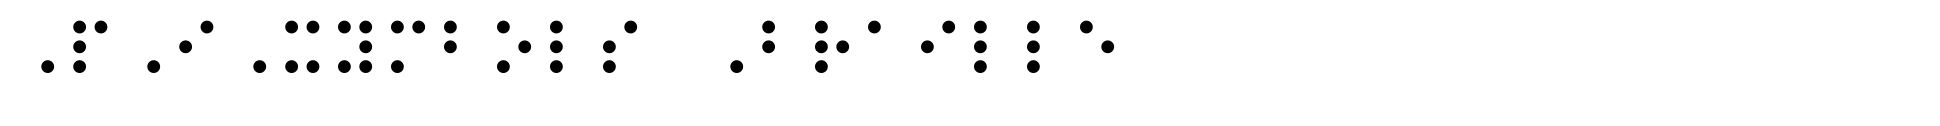 PIXymbols Braille